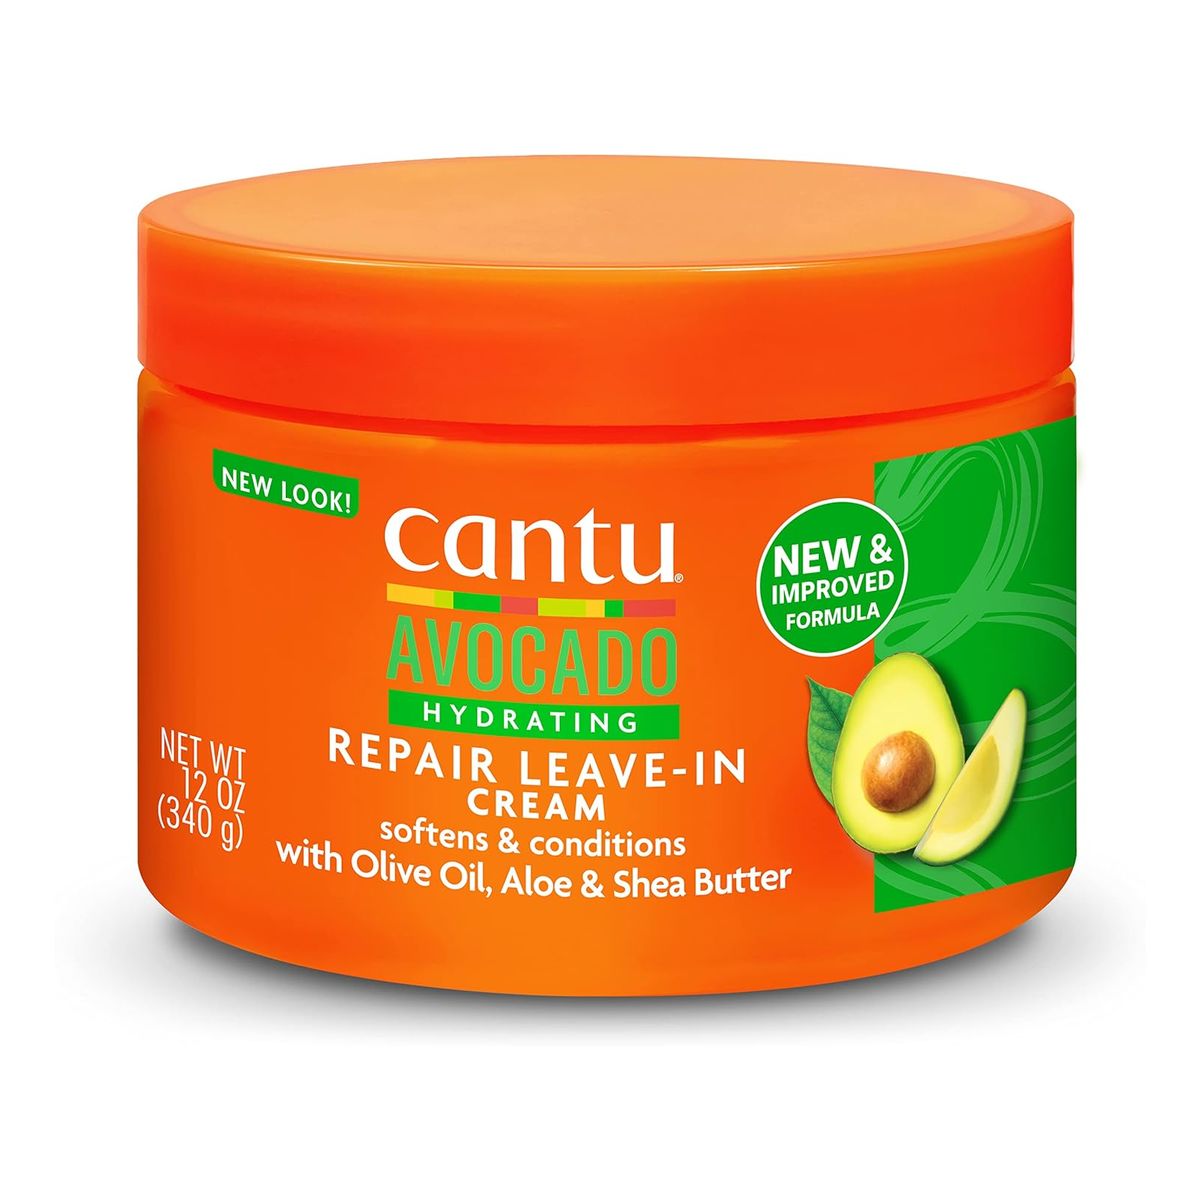 Cantu Avocado Hydrating Repair Leave-In Odżywka do włosów 340g